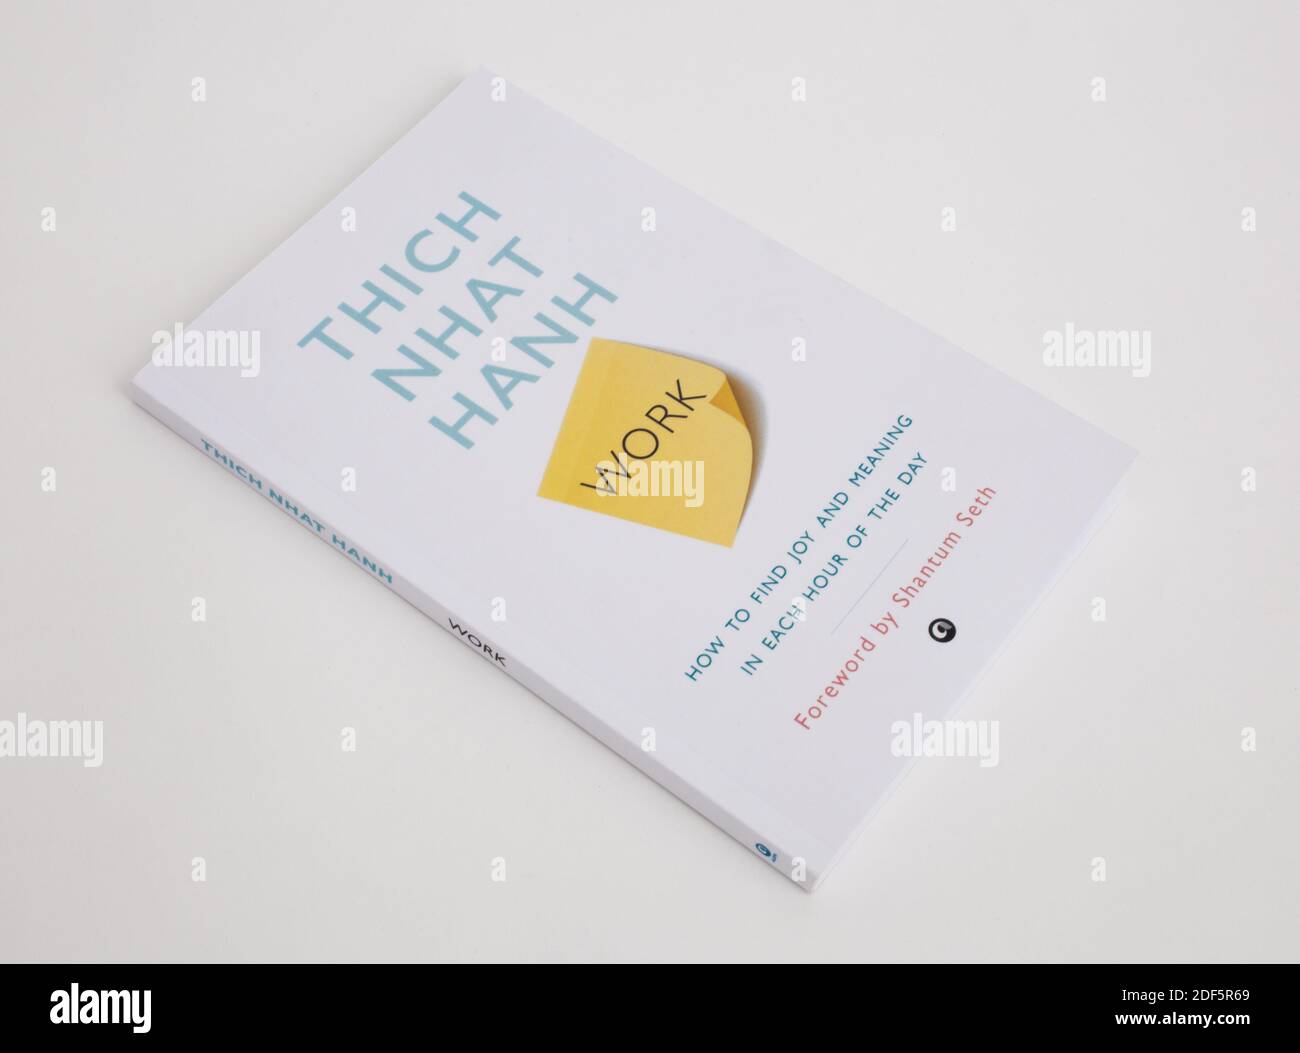 Das Buch, Arbeit, wie man Freude und Bedeutung in jeder Stunde des Tages von Thich Nhat Hanh zu finden Stockfoto